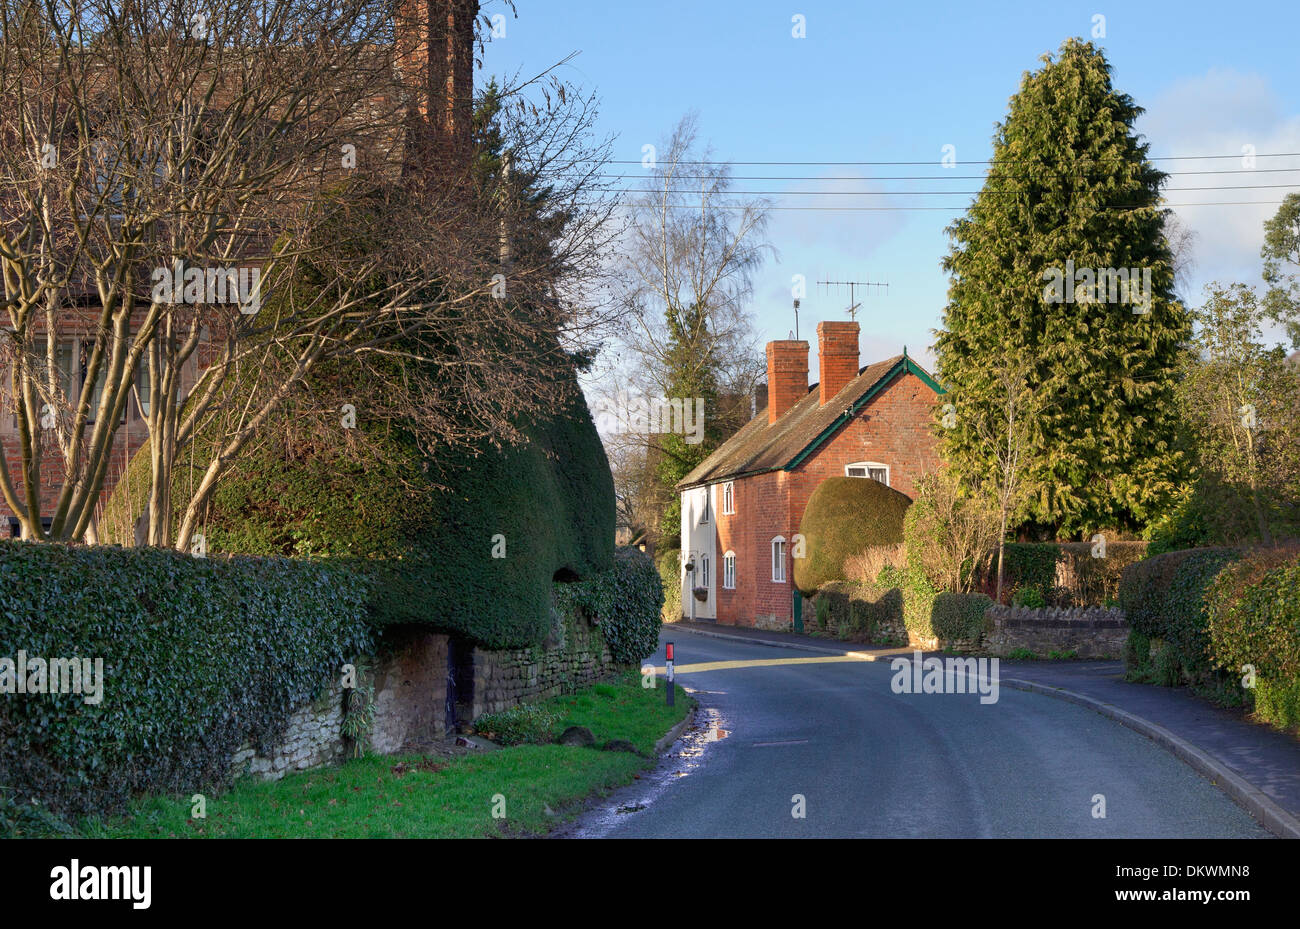 Le Shropshire village d'Ashford Carbonell près de Ludlow, en Angleterre. Banque D'Images